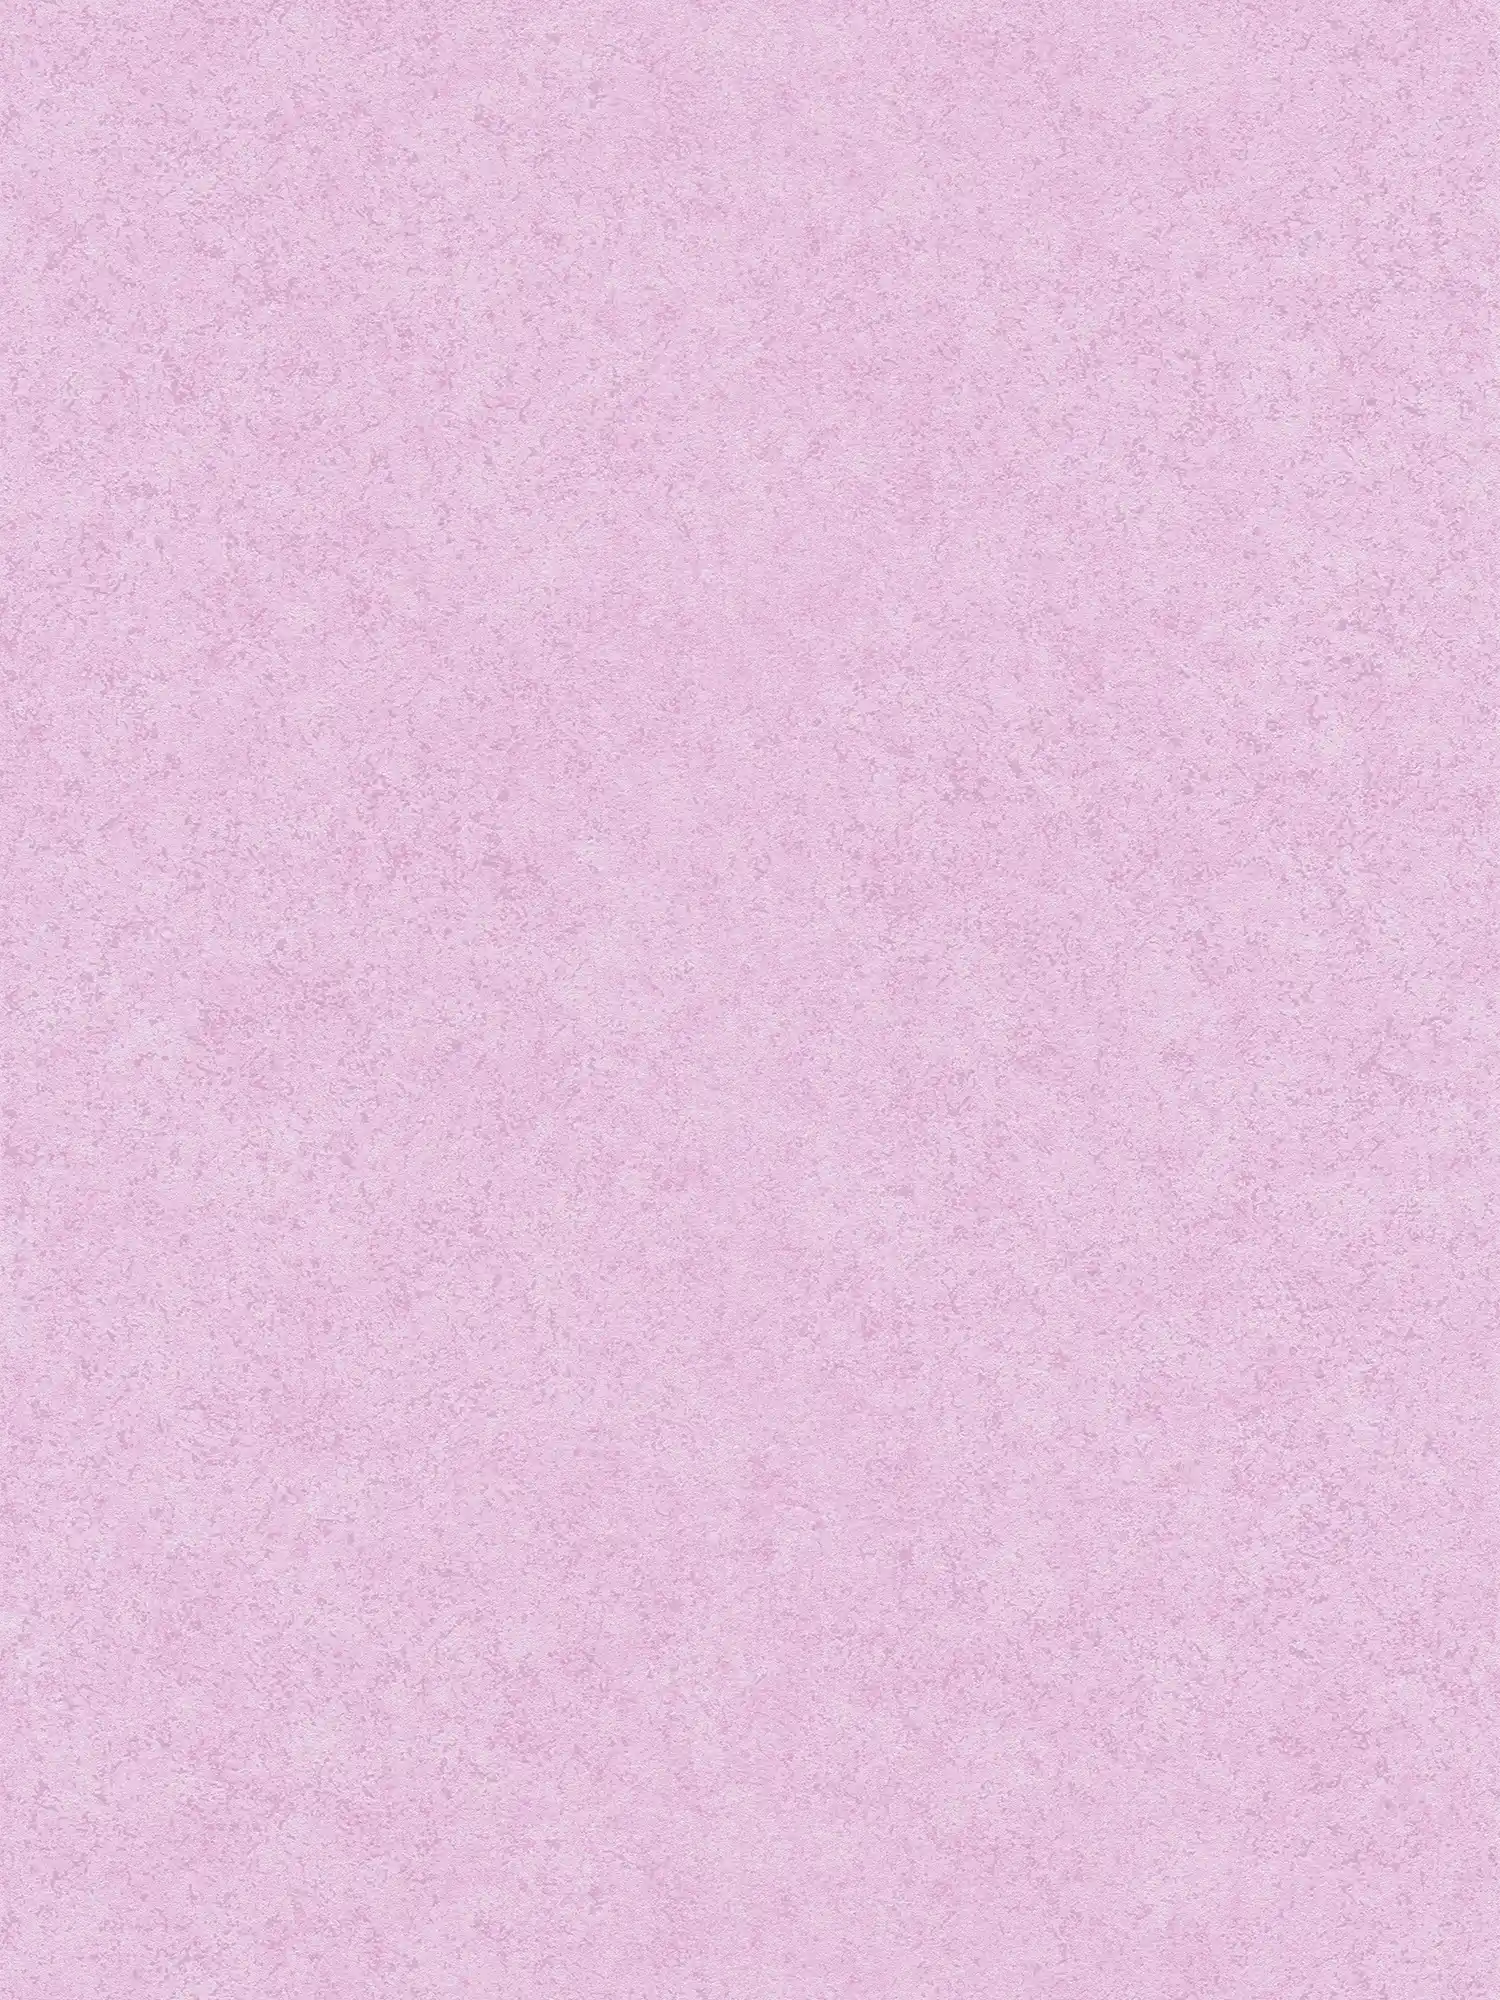 Vliesbehang roze gipslook met mat patroon - roze
